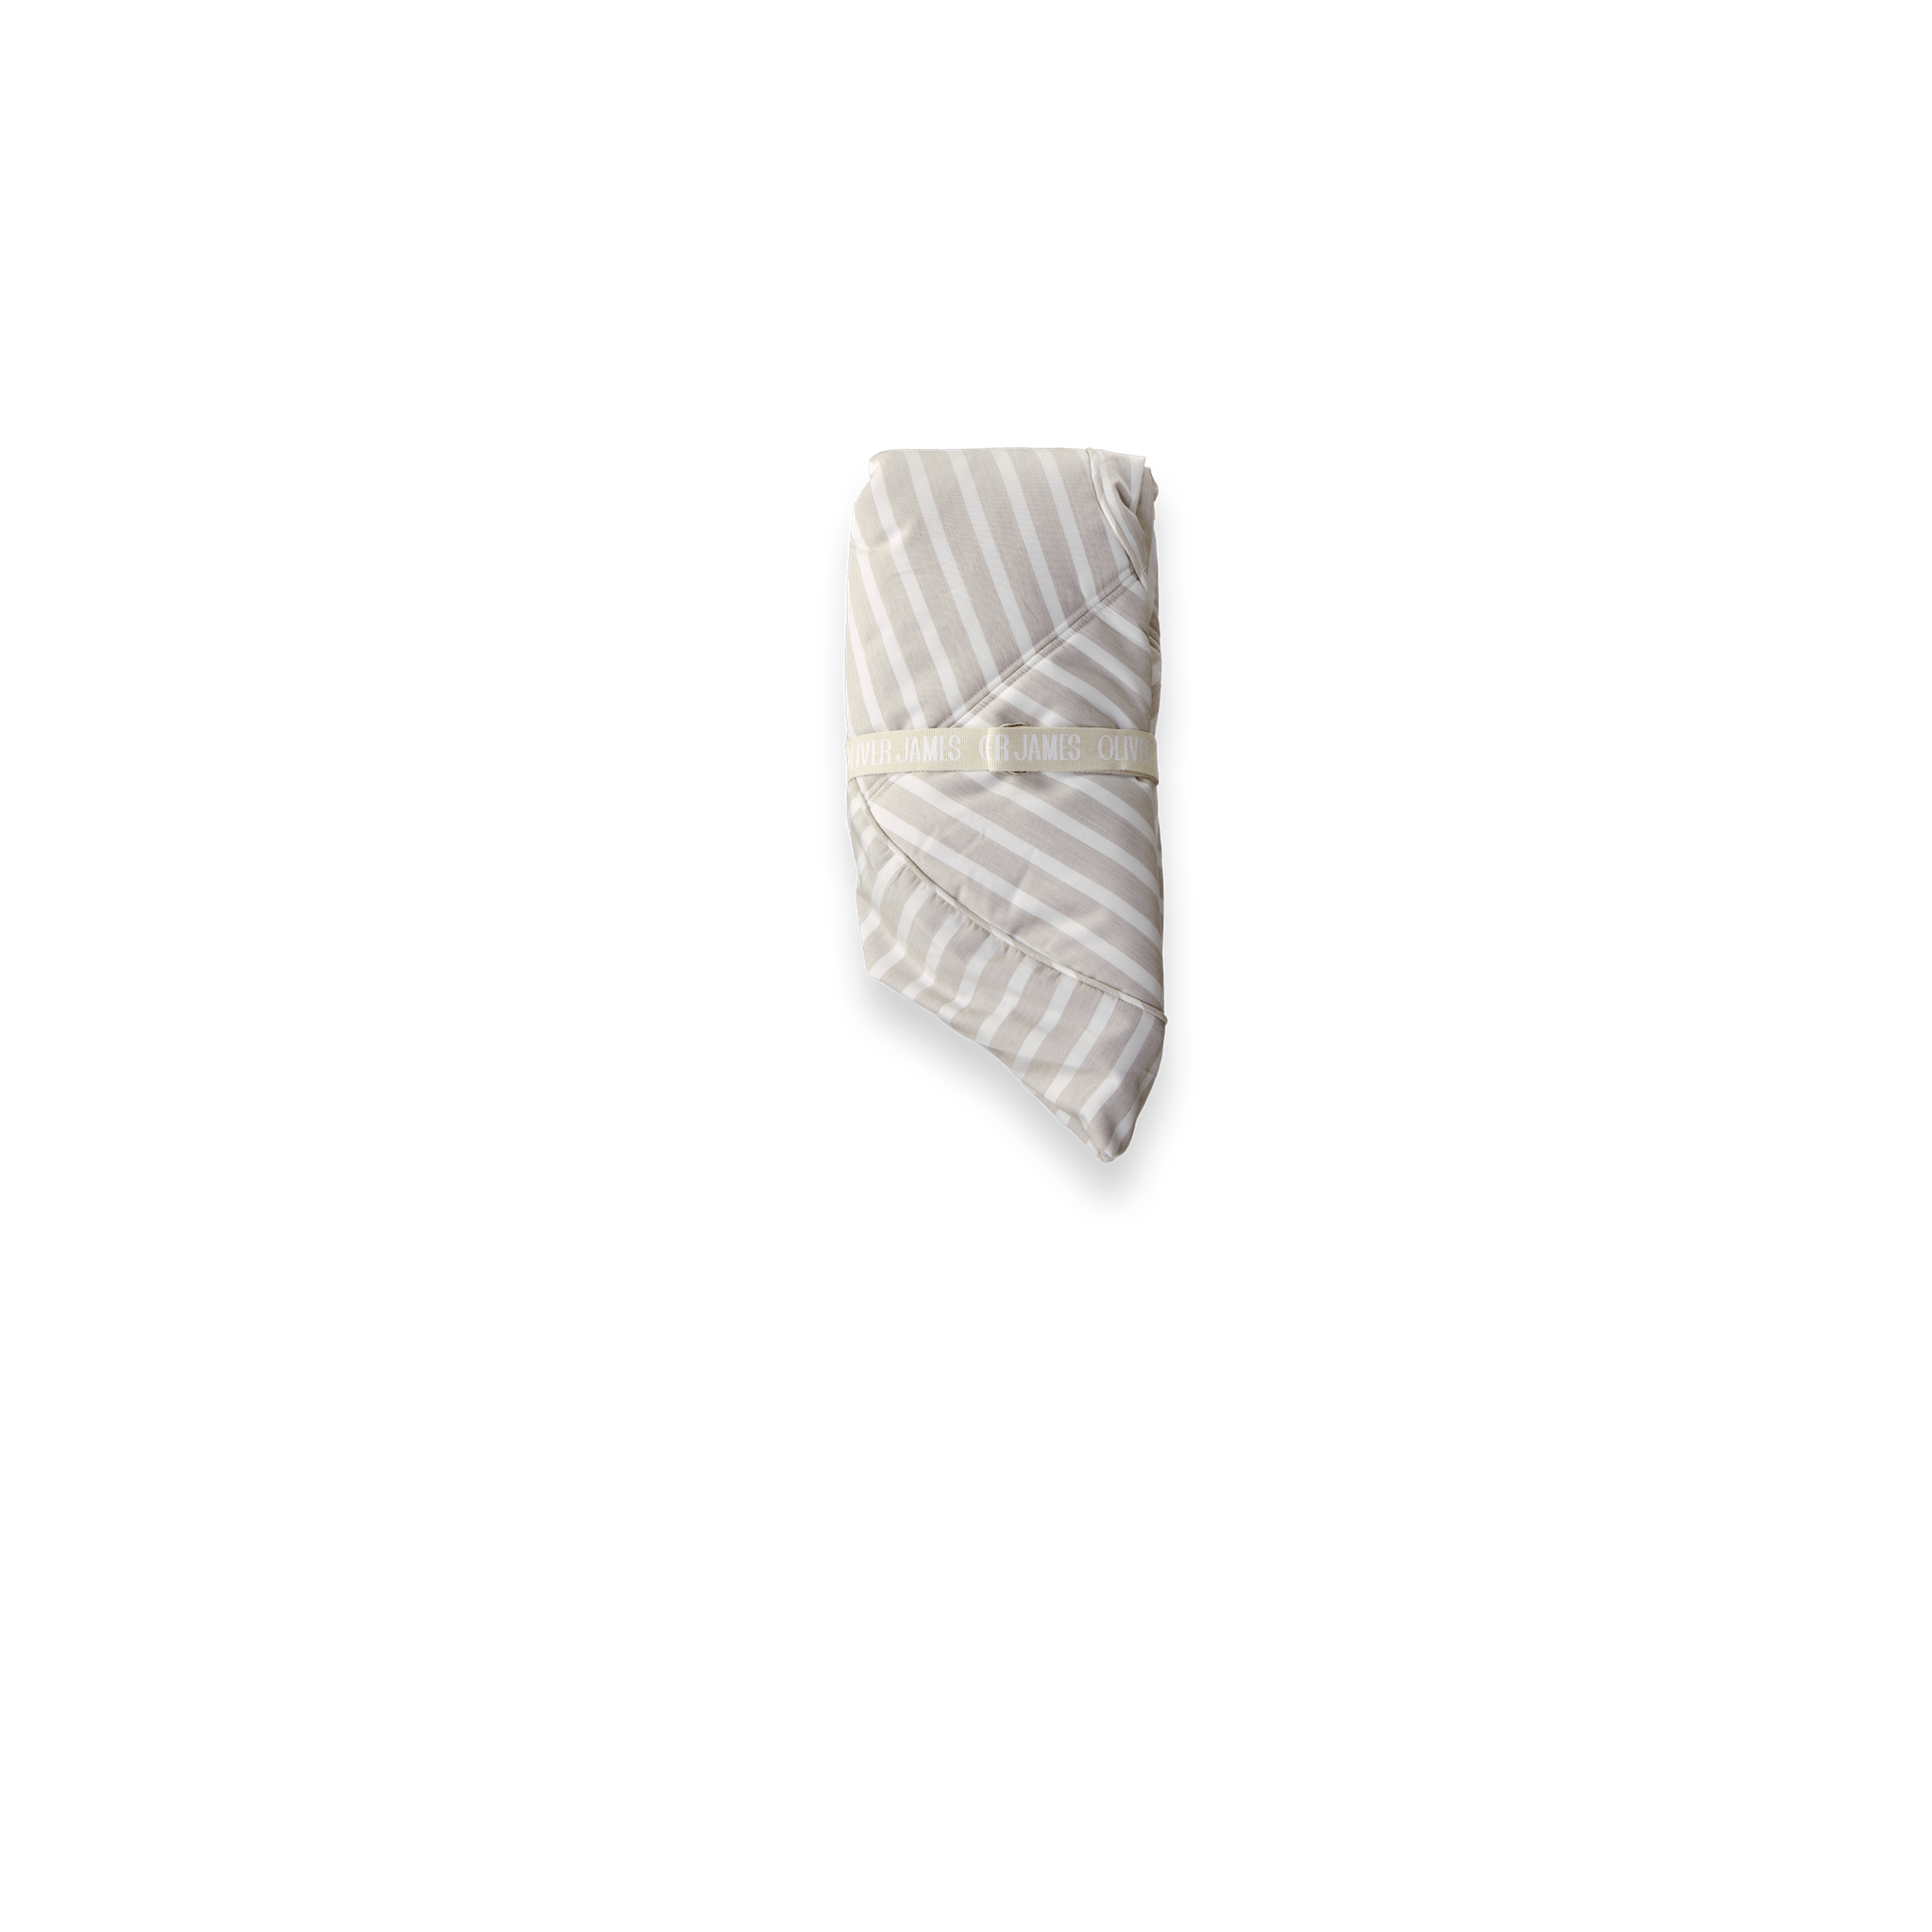 Vue de face d'un flotteur de piscine de luxe suspendu dans un tissu à rayures beige et blanc.